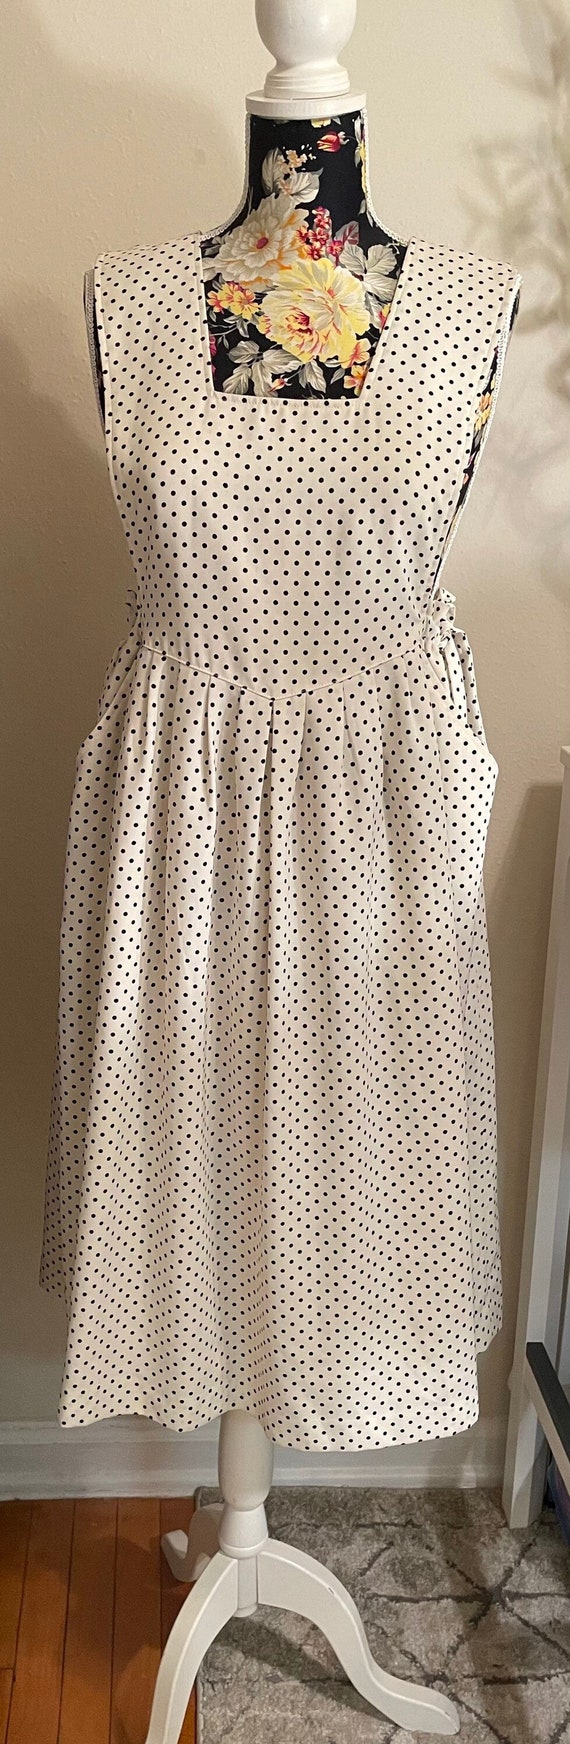 Vintage polka dot black/cream romper pocket dress-size 9